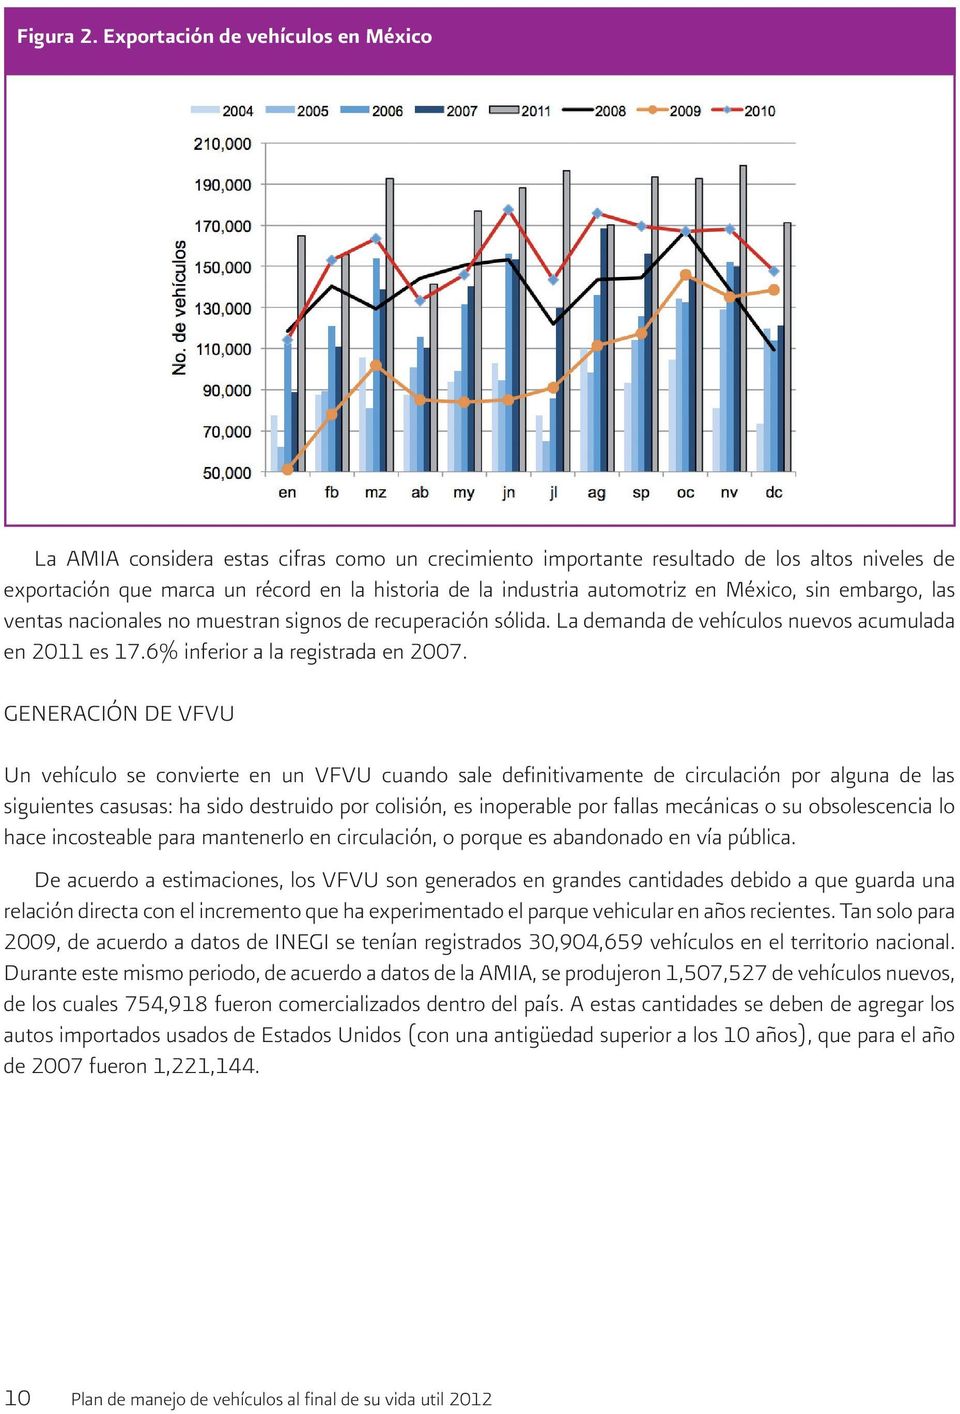 automotriz en México, sin embargo, las ventas nacionales no muestran signos de recuperación sólida. La demanda de vehículos nuevos acumulada en 2011 es 17.6% inferior a la registrada en 2007.